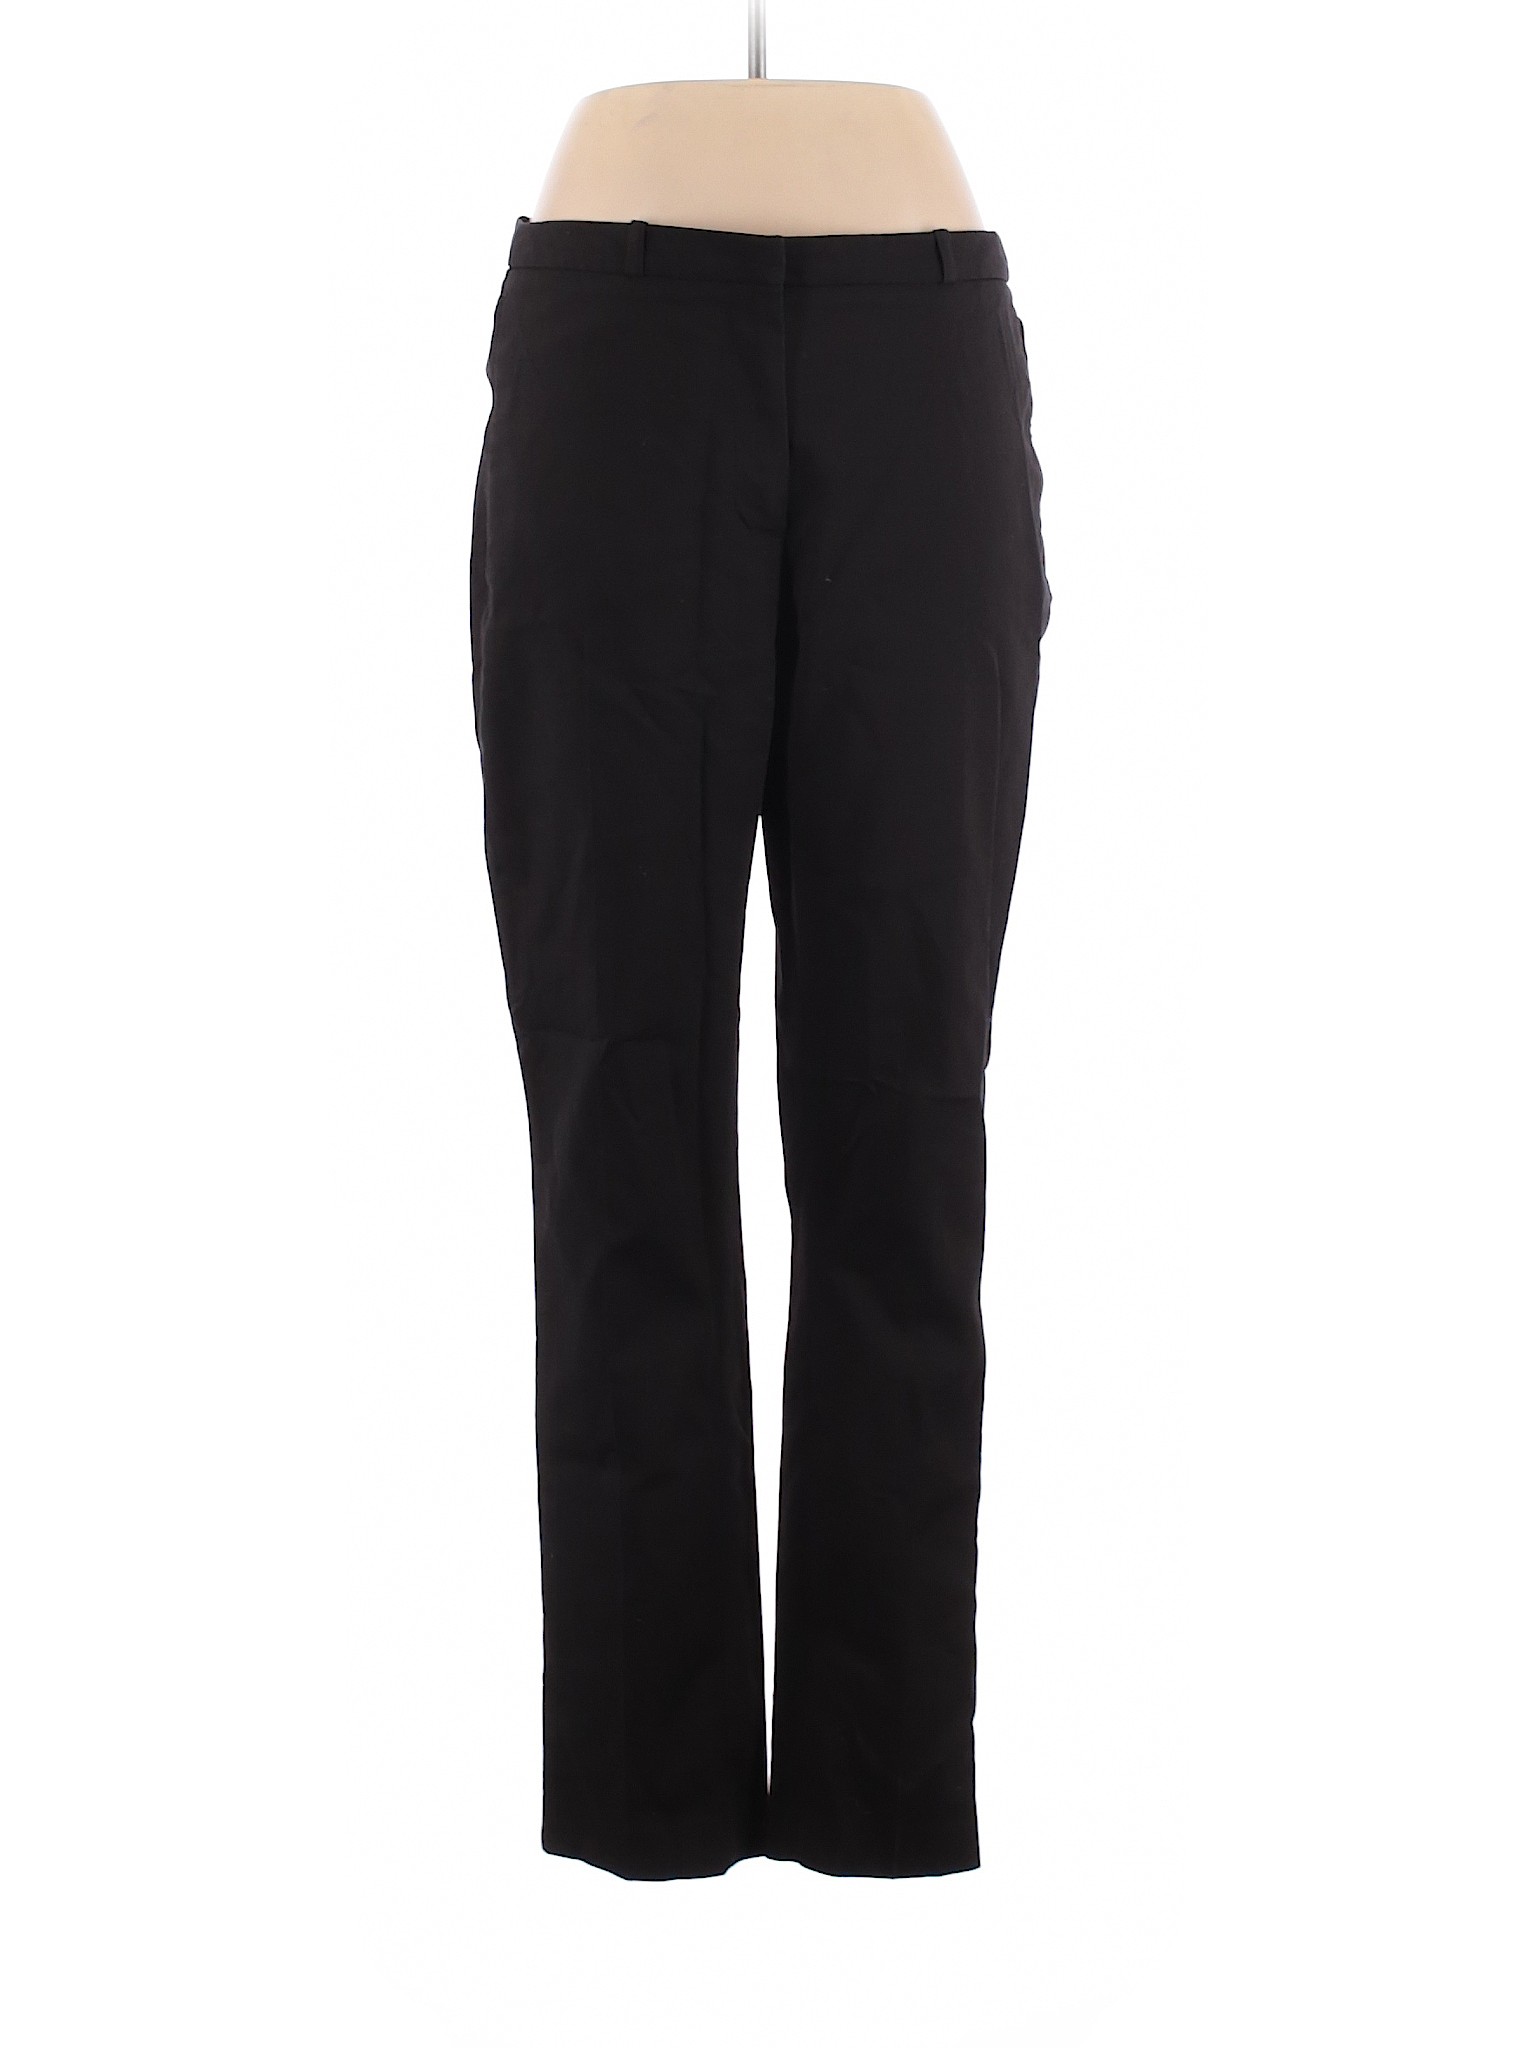 H&M Women Black Dress Pants 12 | eBay